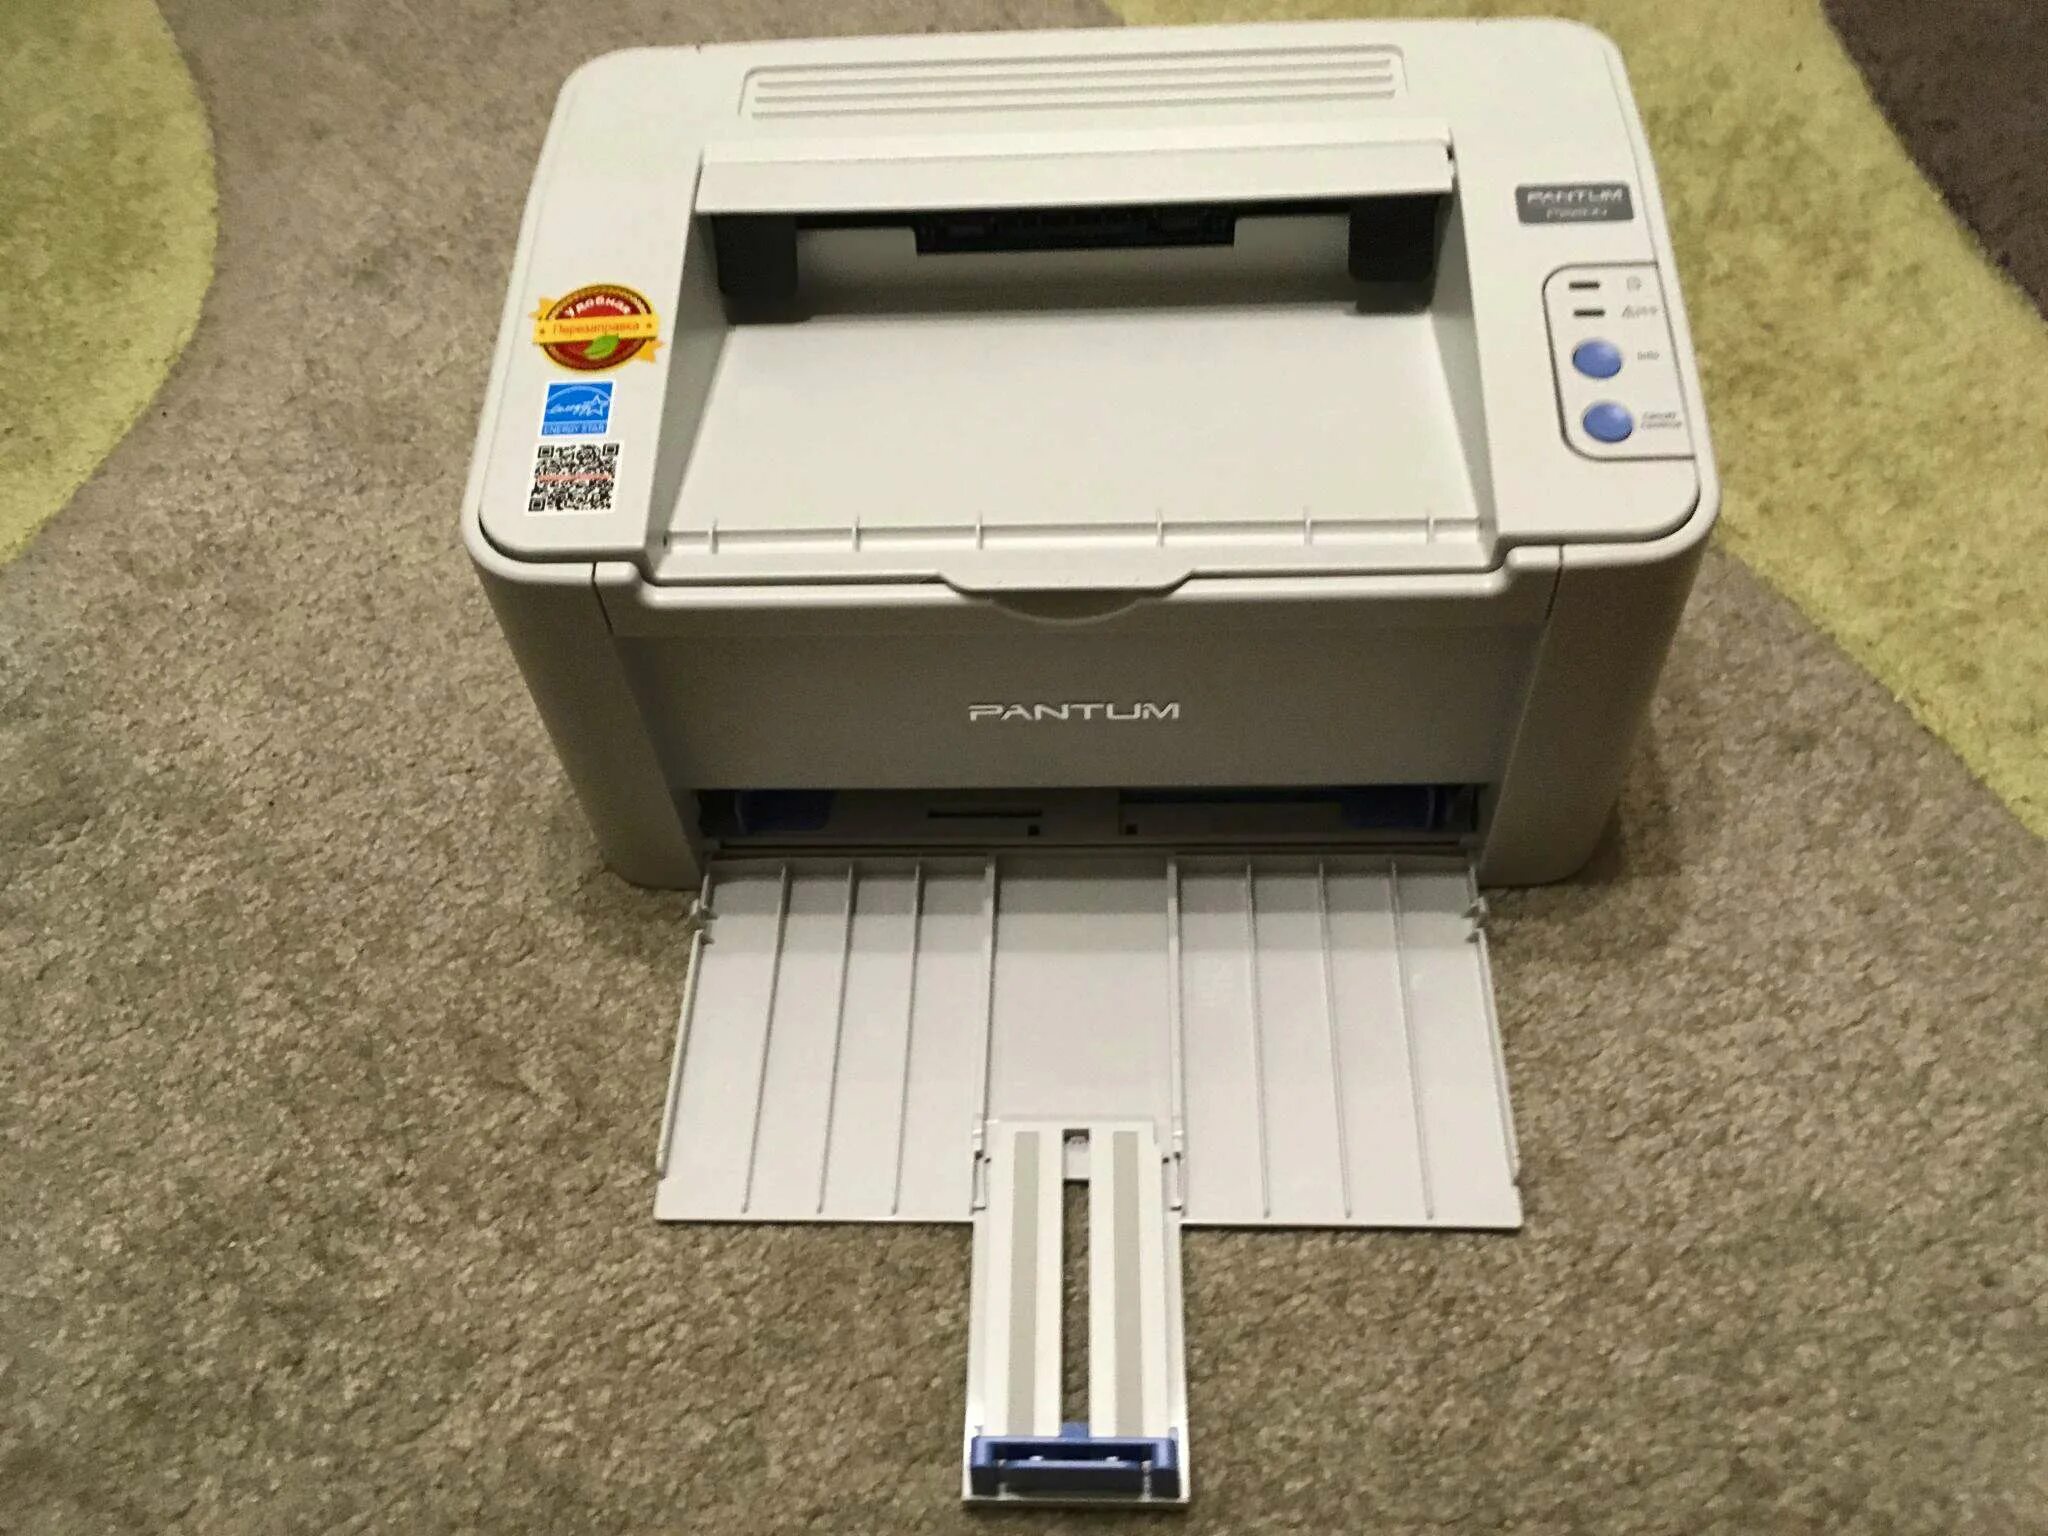 Принтер p2200 series. Принтер лазерный Pantum p2200. Принтер Pantum 2200. Pantum принтер p2200 принтер. Принтер Pantum p2200, серый.